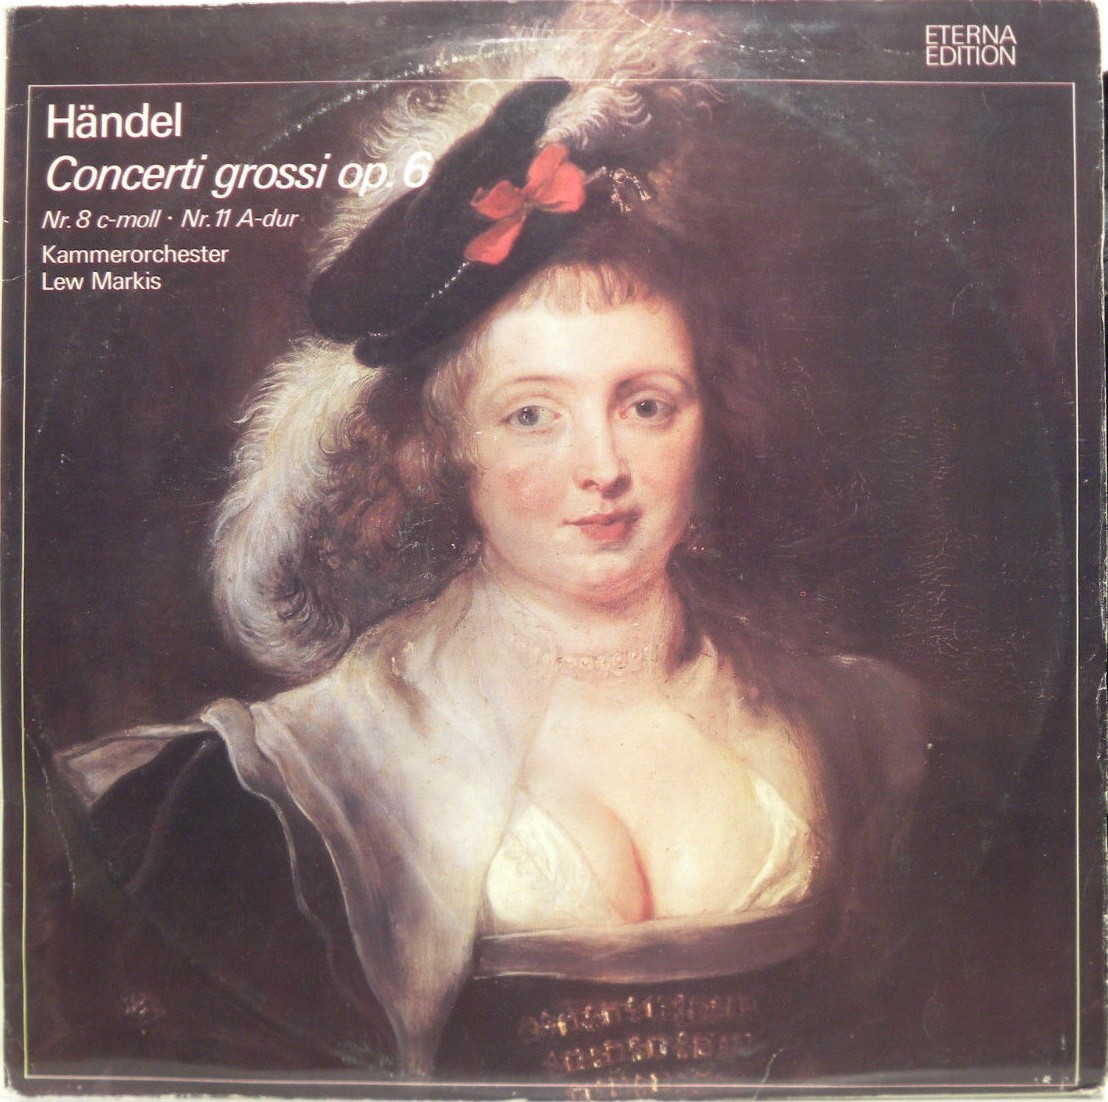 Г. Гендель. 12 concerti grossi, соч. 6 (Л. Маркиз)